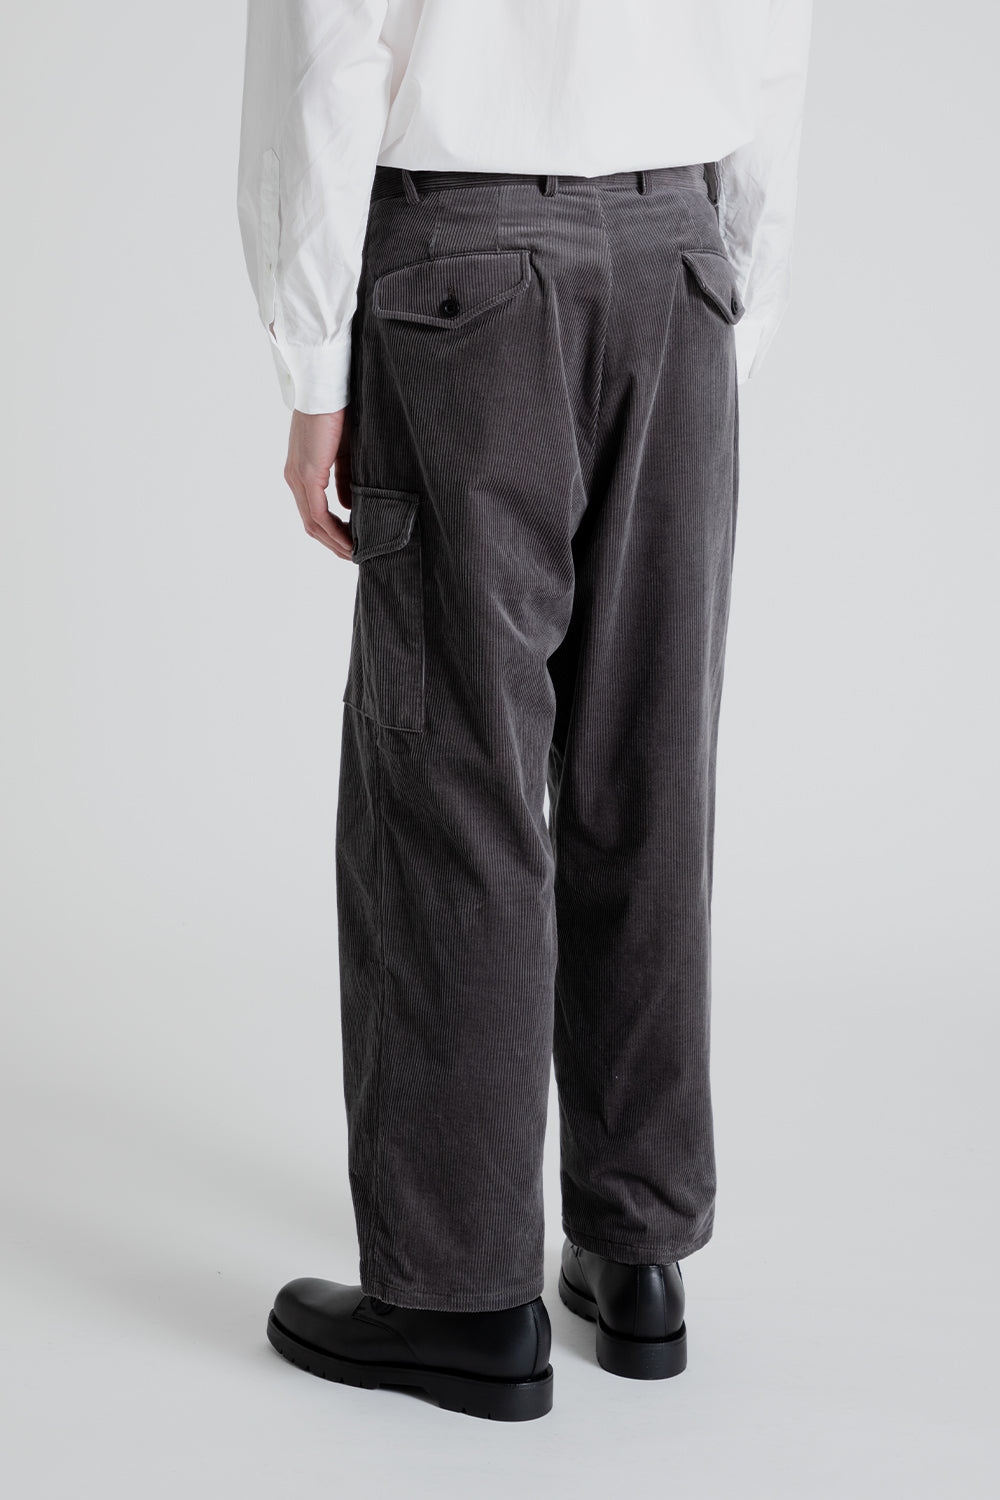 Kaptain Sunshine Gurkha Trousers in Grey | Wallace Mercantile Shop